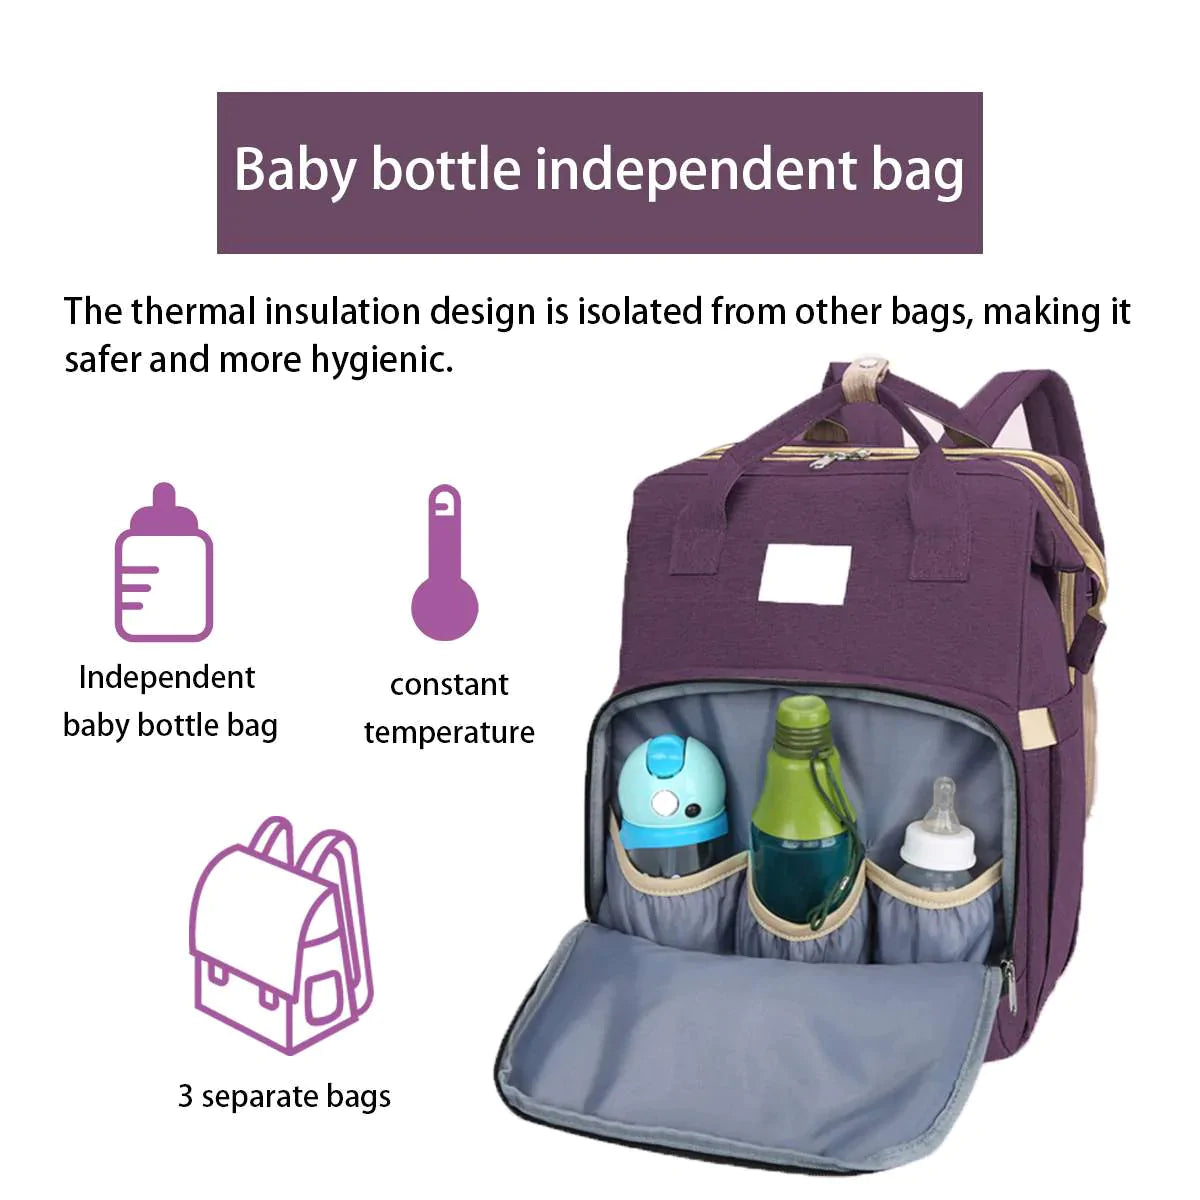 Baby bottle independent bag